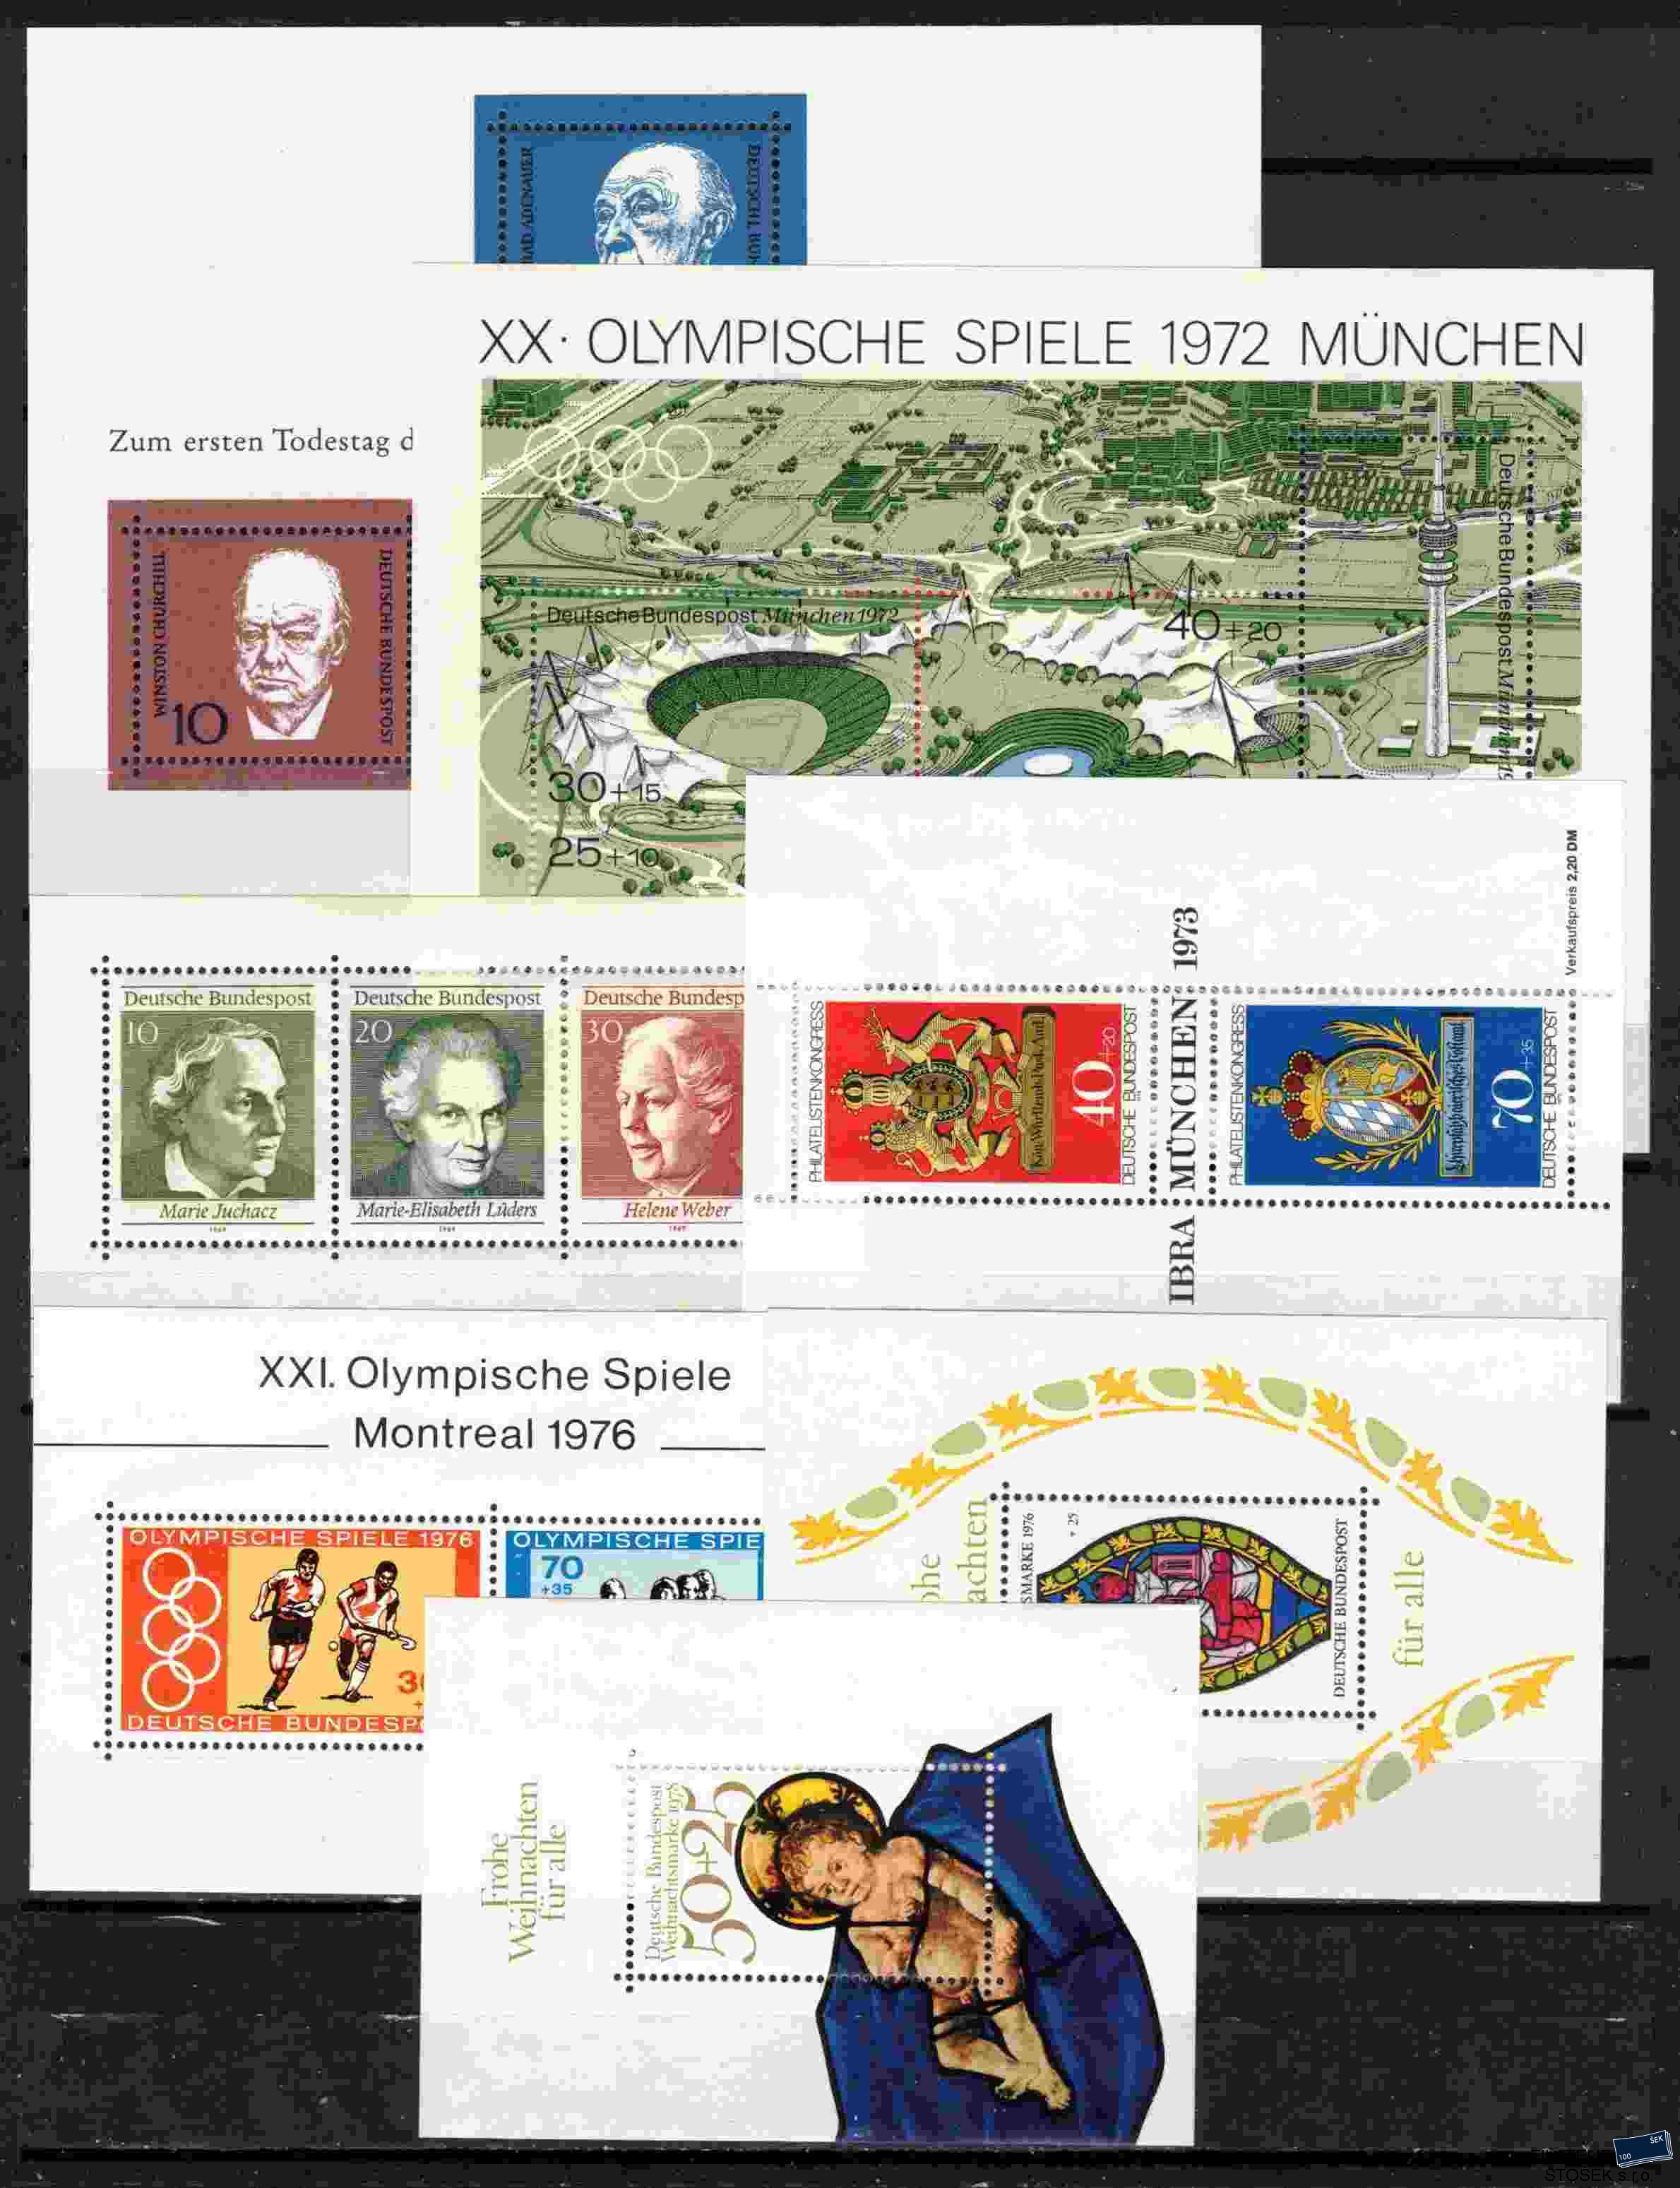 Německo - Bundes známky - sestava aršíků na kartičce A 5